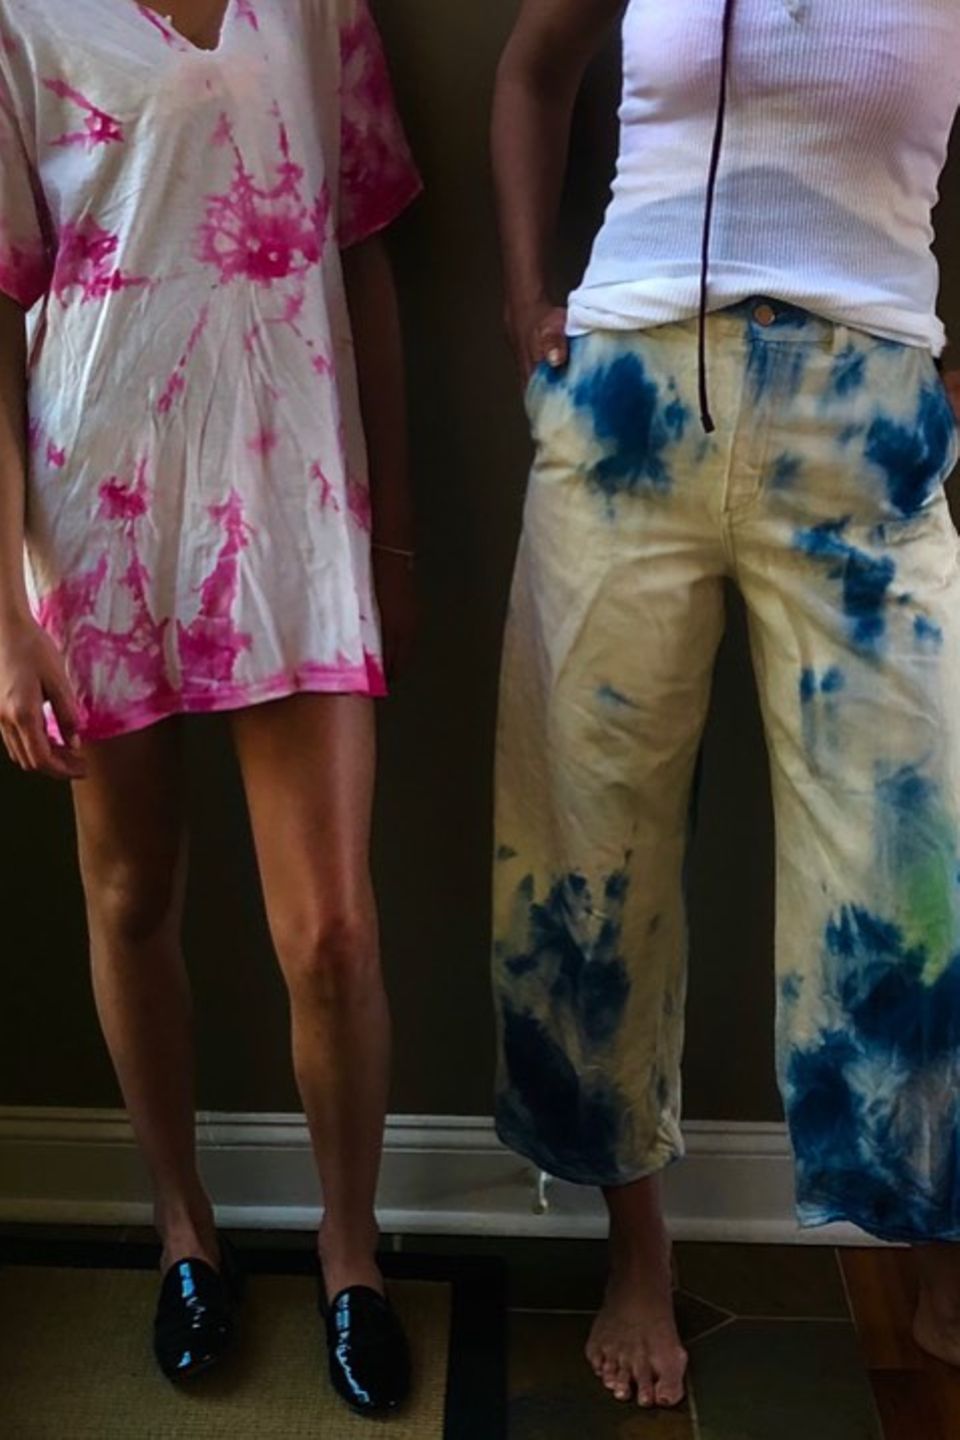 Denn vor wenigen Wochen haben Katie Holmes und Suri Cruise Kleidung selbst gebatikt, wie dieses Bild auf Instagram zeigt. Suri hat das lässige, weißes Oversize T-Shirt Pink gefärbt und ihre Mama eine 3/4-Hose Gelb-Blau. Auch während der Freundinnen-Zeit in New York kann die beiden anscheinend nichts trennen ...